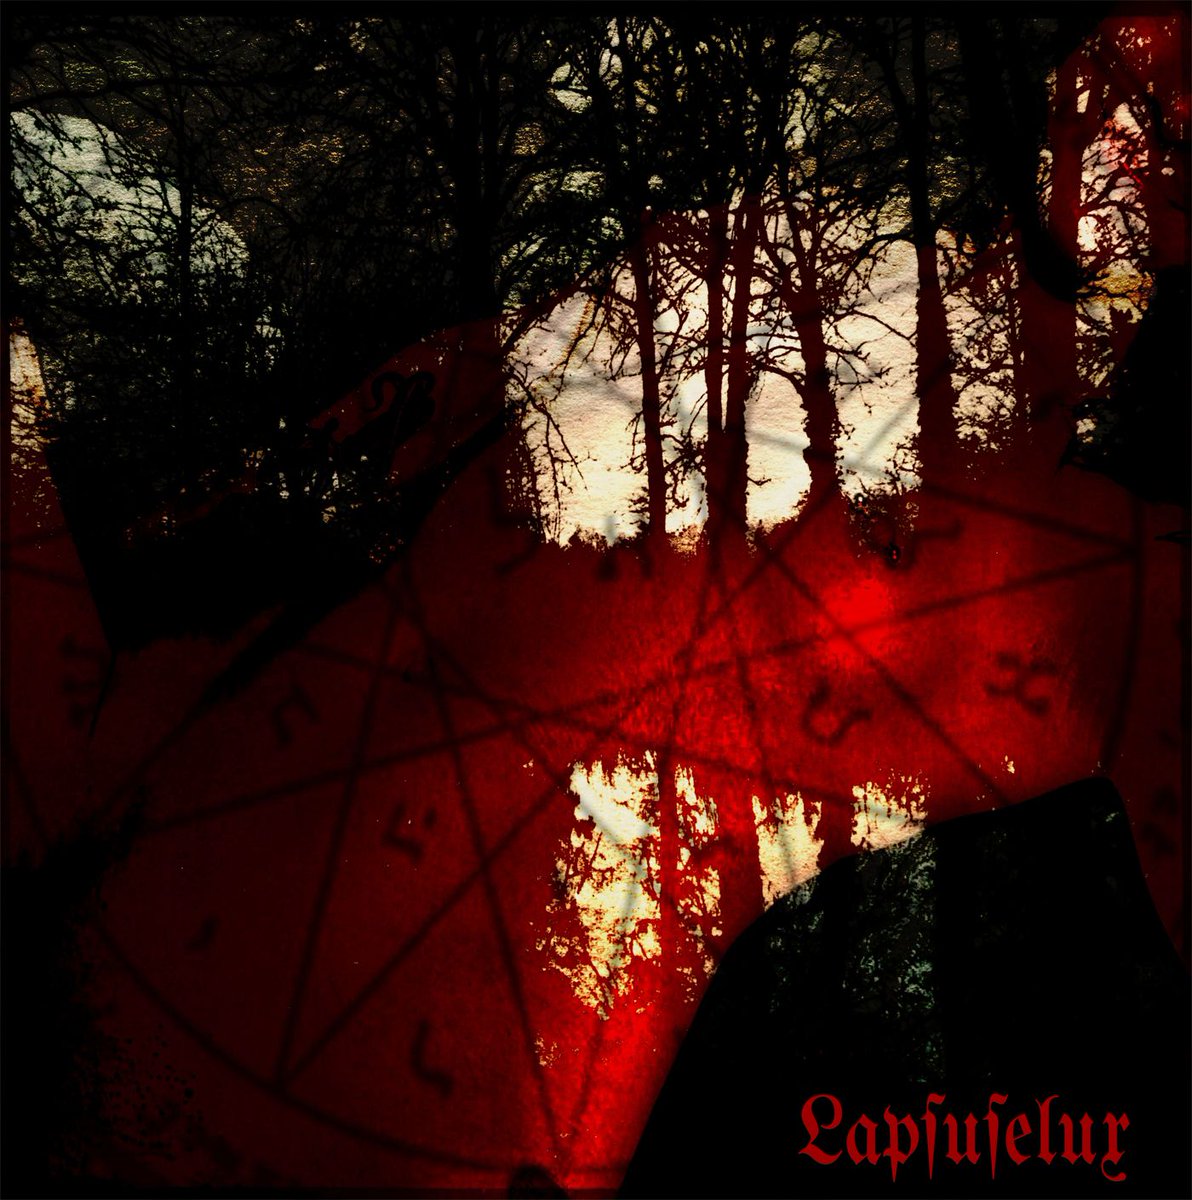 Lapsuselux - Upon The Catatonic Plane #darkambient #ambient #NewMusic #muscintime #NewAlbum 
massgravenimage.bandcamp.com/album/upon-the…